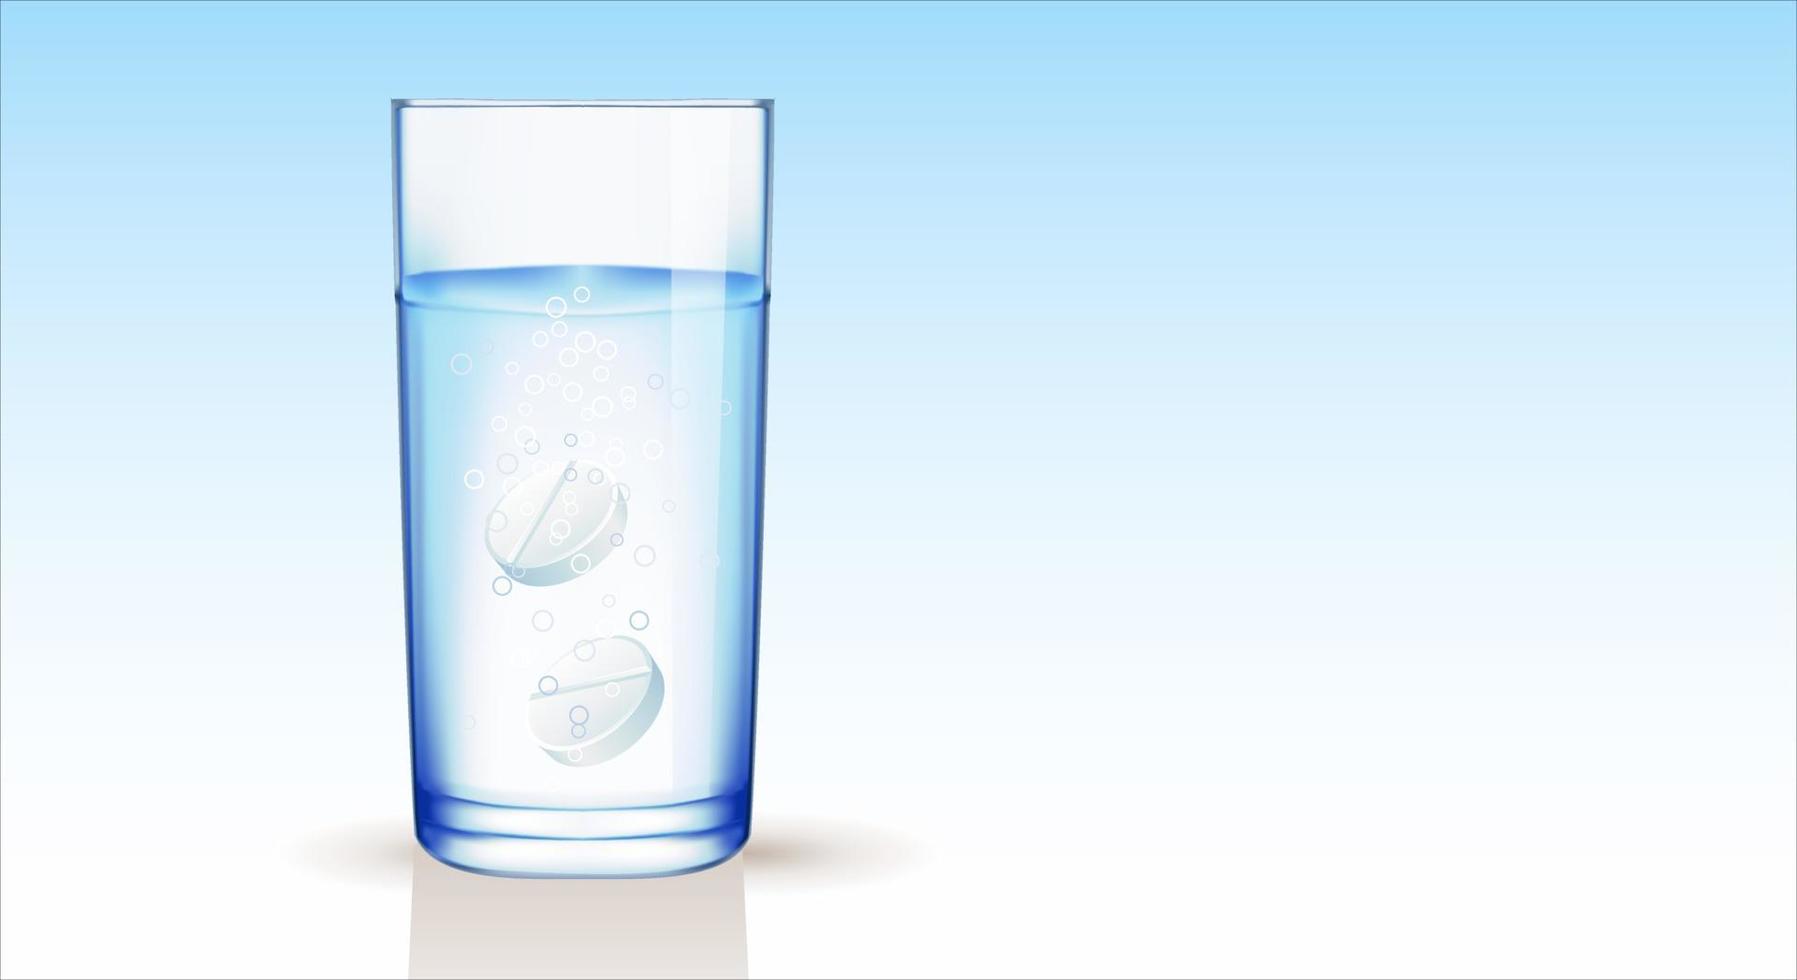 vidrio transparente con agua y tabletas instantáneas efervescentes con burbujas, fondo degradado azul. copie el espacio ilustración vectorial vector